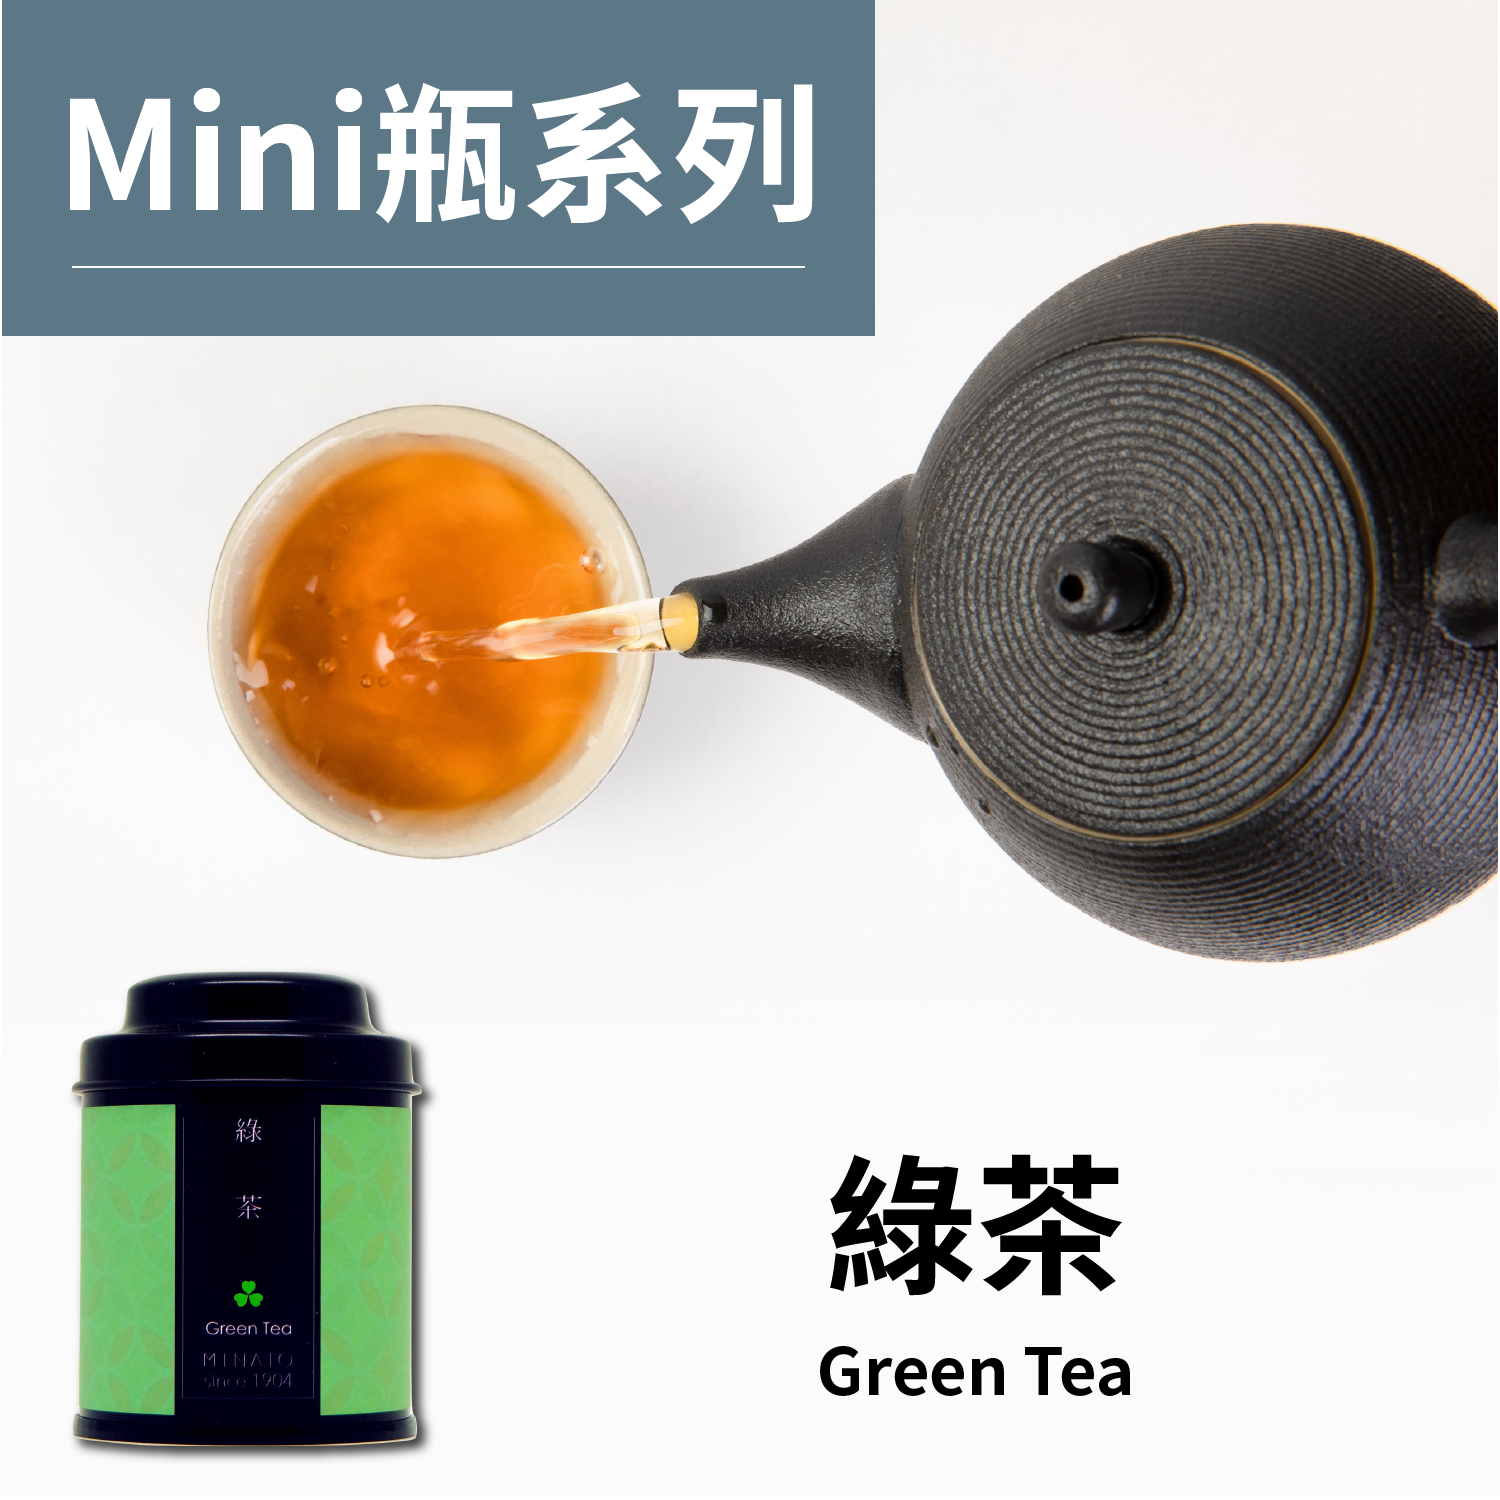 茶粒茶 原片茶葉 Mini黑罐-綠茶 25g